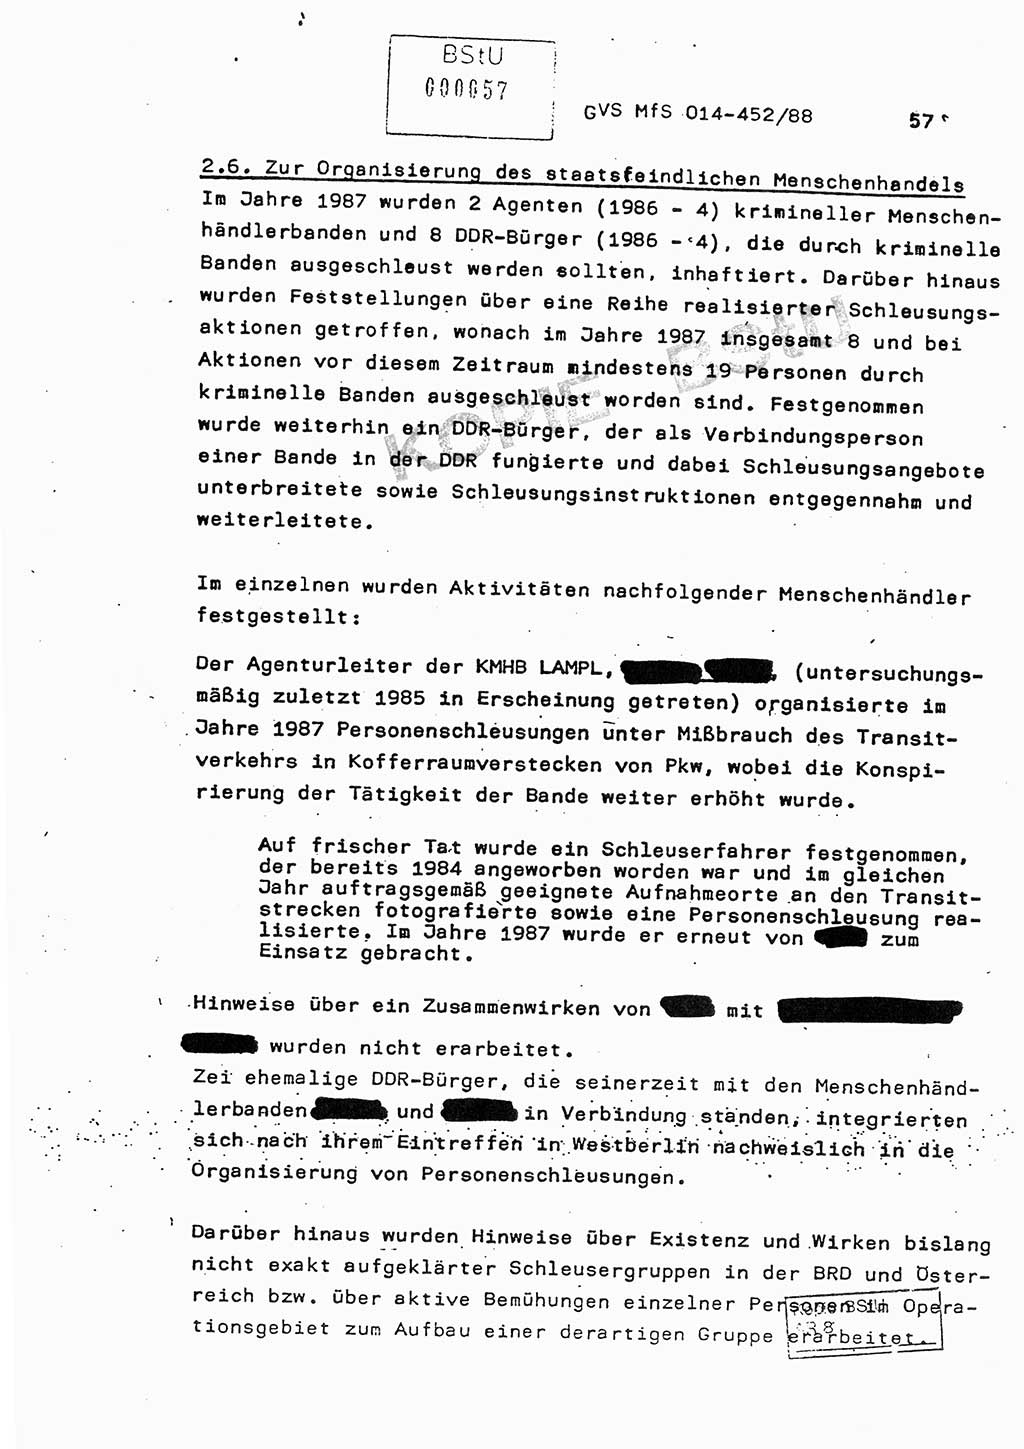 Jahresbericht der Hauptabteilung (HA) Ⅸ 1987, Einschätzung der Wirksamkeit der Untersuchungsarbeit im Jahre 1987, Ministerium für Staatssicherheit (MfS) der Deutschen Demokratischen Republik (DDR), Hauptabteilung Ⅸ, Geheime Verschlußsache (GVS) o014-452/88, Berlin 1988, Seite 57 (Einsch. MfS DDR HA Ⅸ GVS o014-452/88 1987, S. 57)